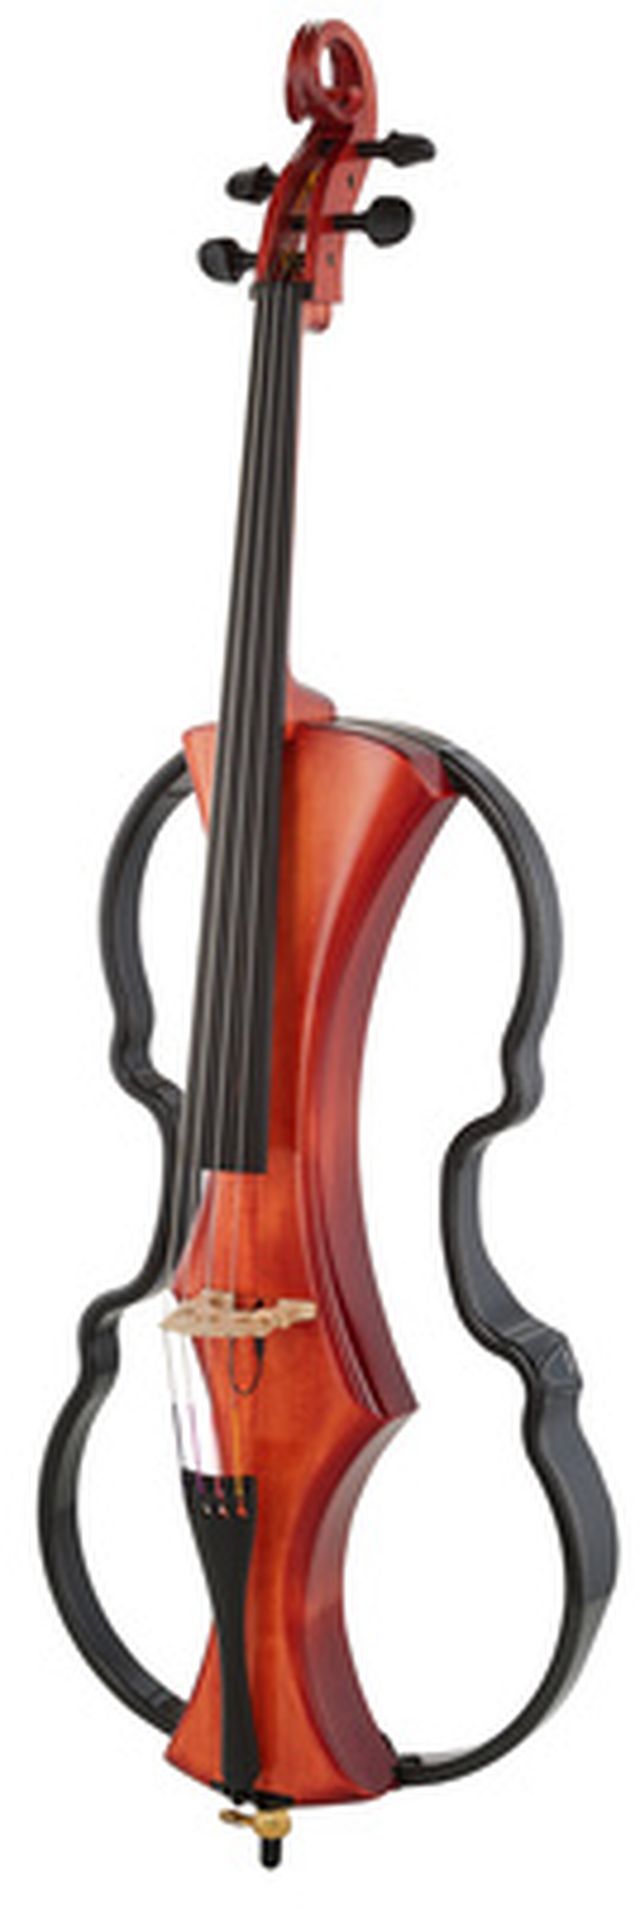 Gewa Novita 3.0 Electric Cello RB